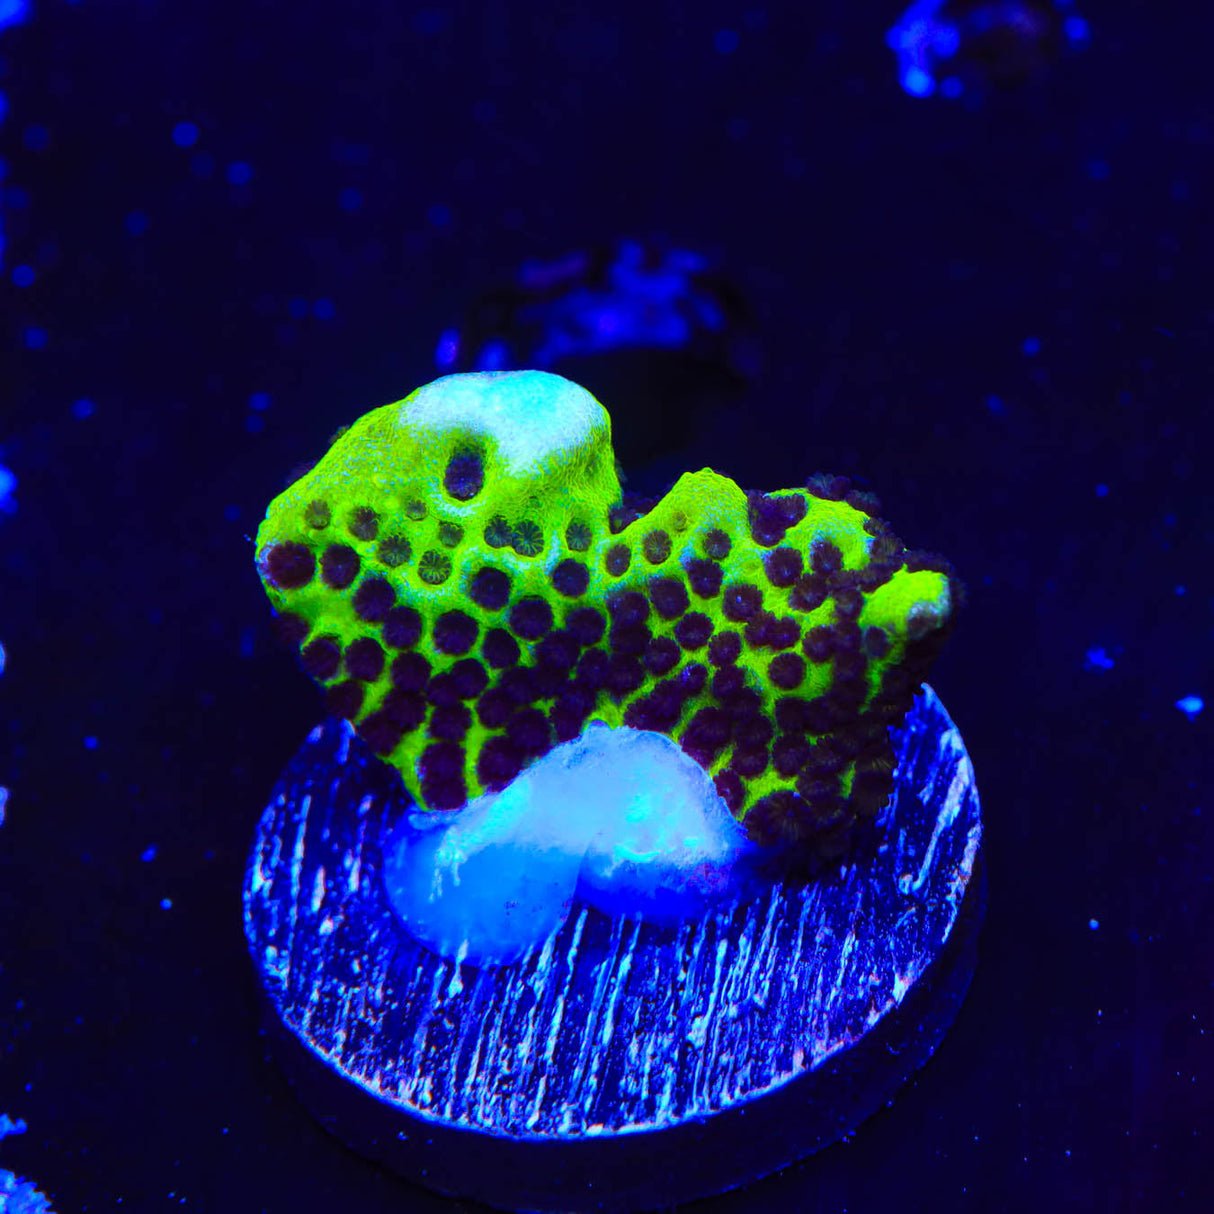 ORA Green Spongodes Montipora Coral - Top Shelf Aquatics